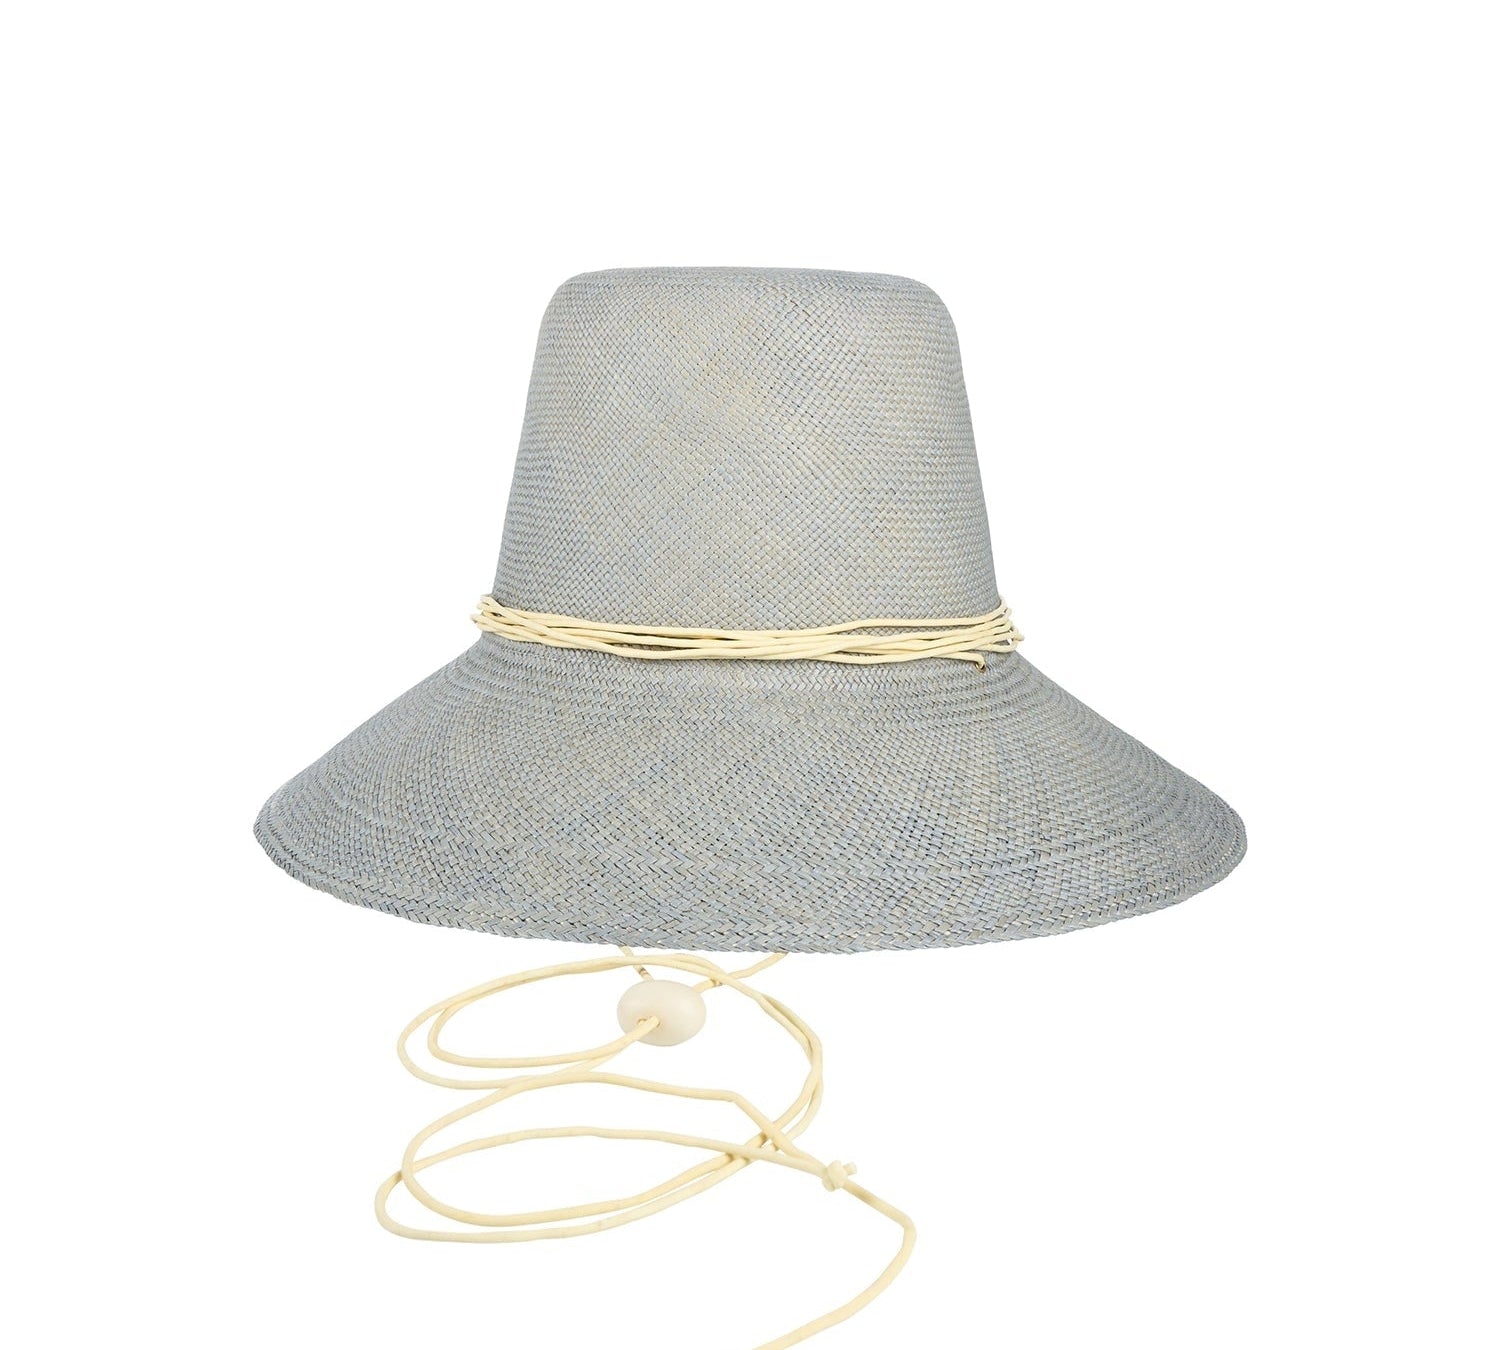 Tavira - SALE Hat artesano